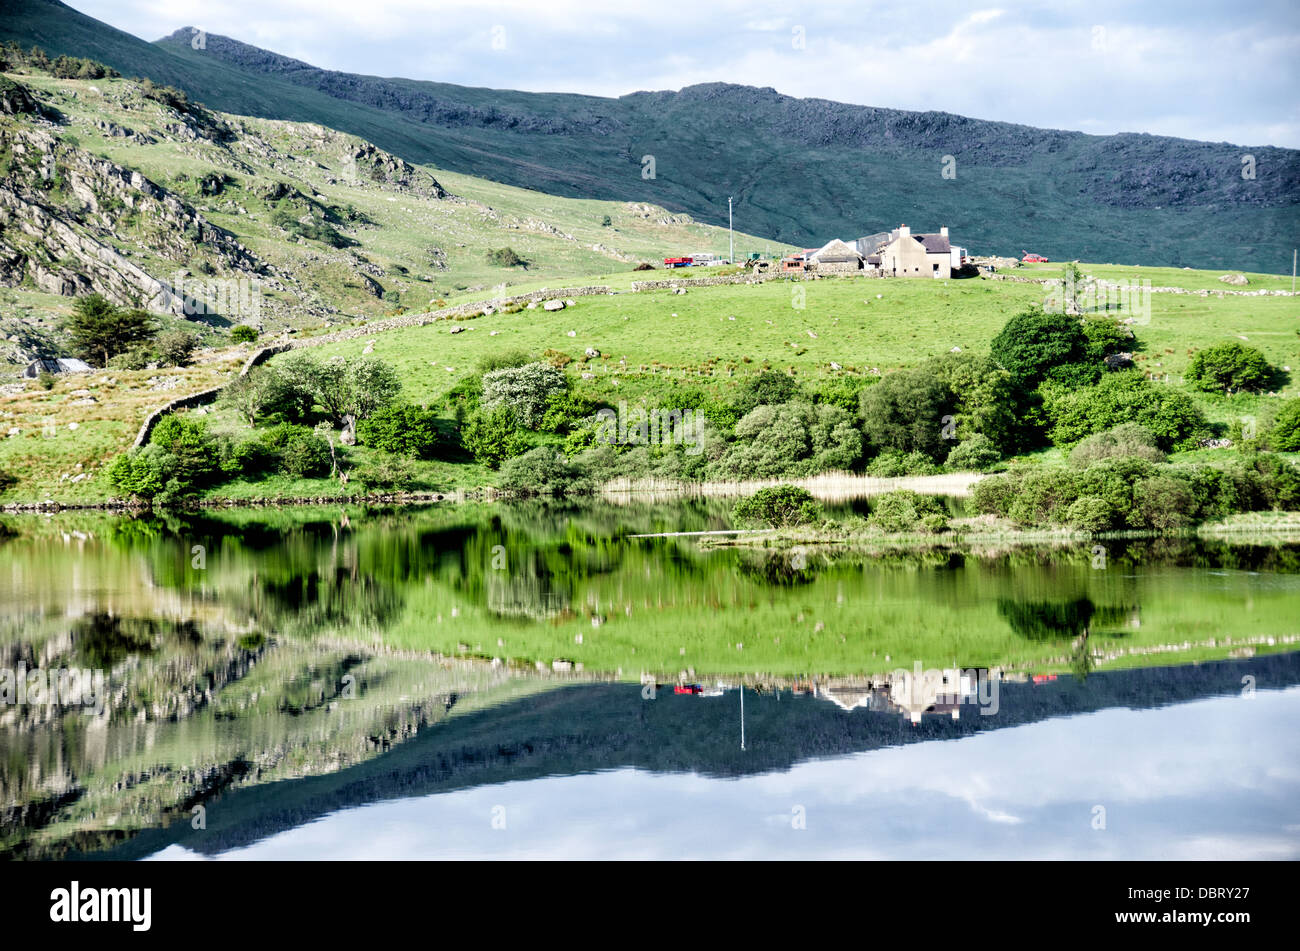 SNOWDONIA NATIONAL PARK, Wales - die zerklüftete Landschaft der Berge im Norden des Snowdonia National Park, Wales, entlang der wunderschönen EINE 4086 Straße. Stockfoto